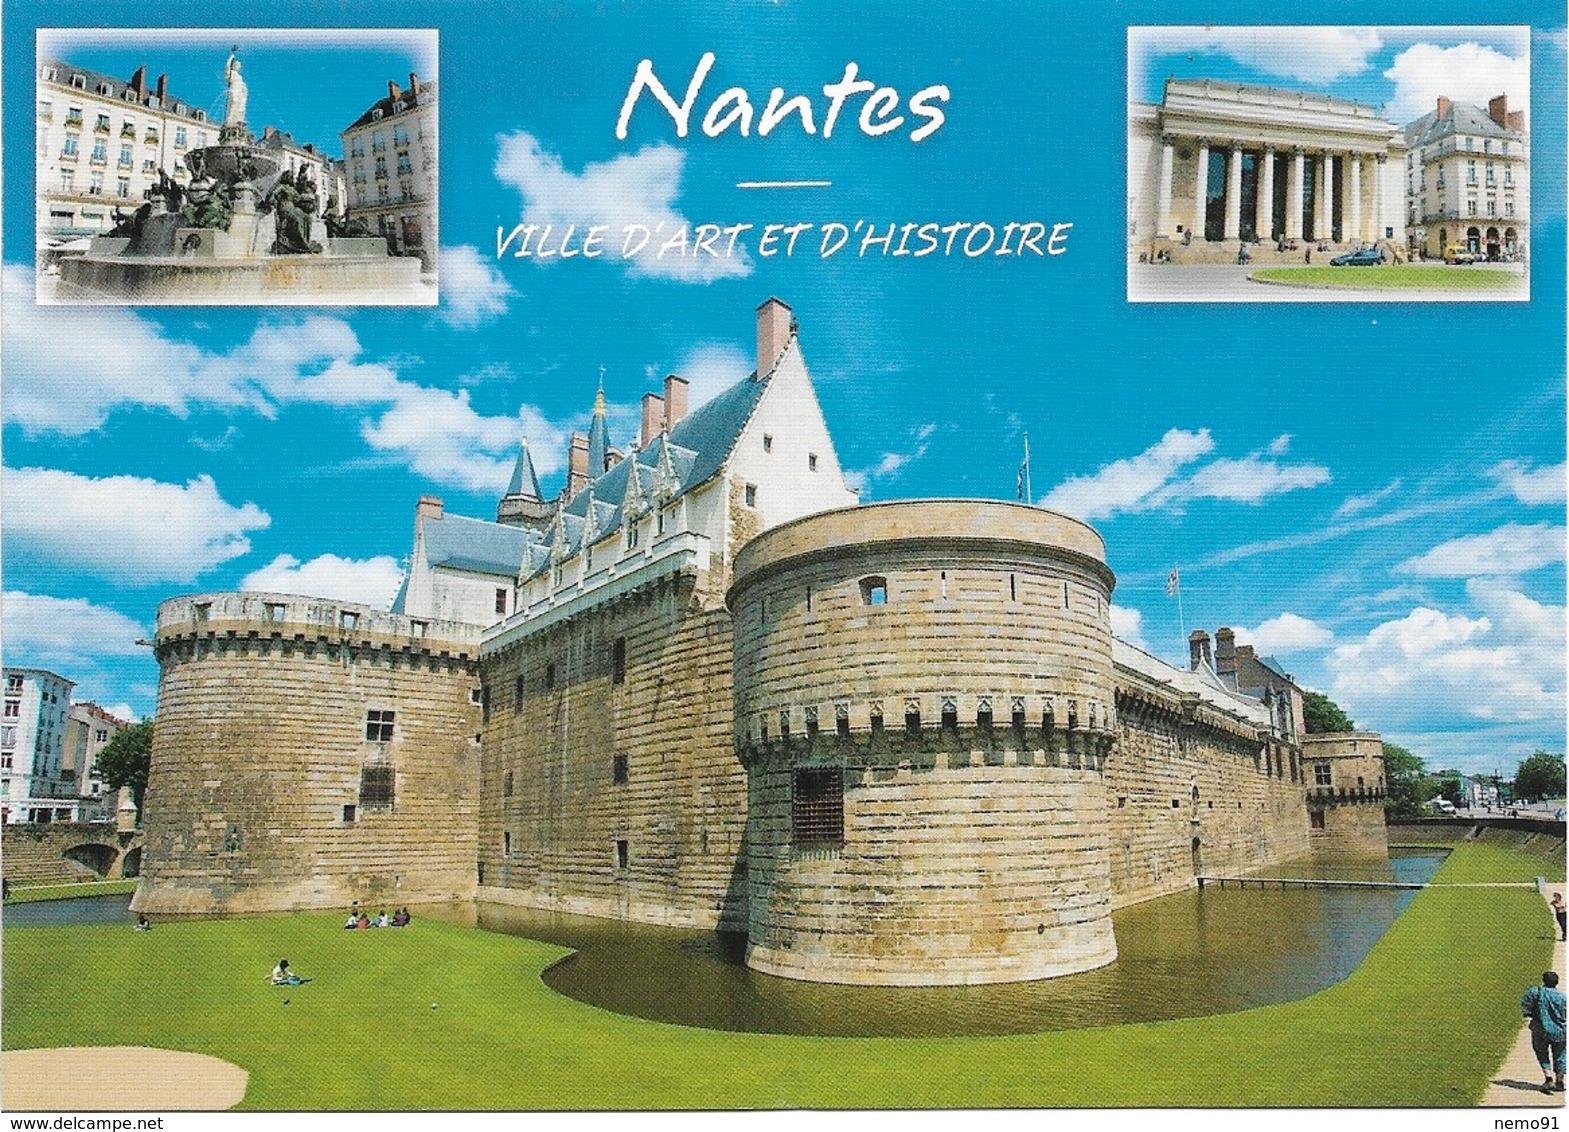 44 - NANTES - VILLE D'ART ET D'HISTOIRE -  3 PETITES VUES - CPM - VIERGE - - Nantes